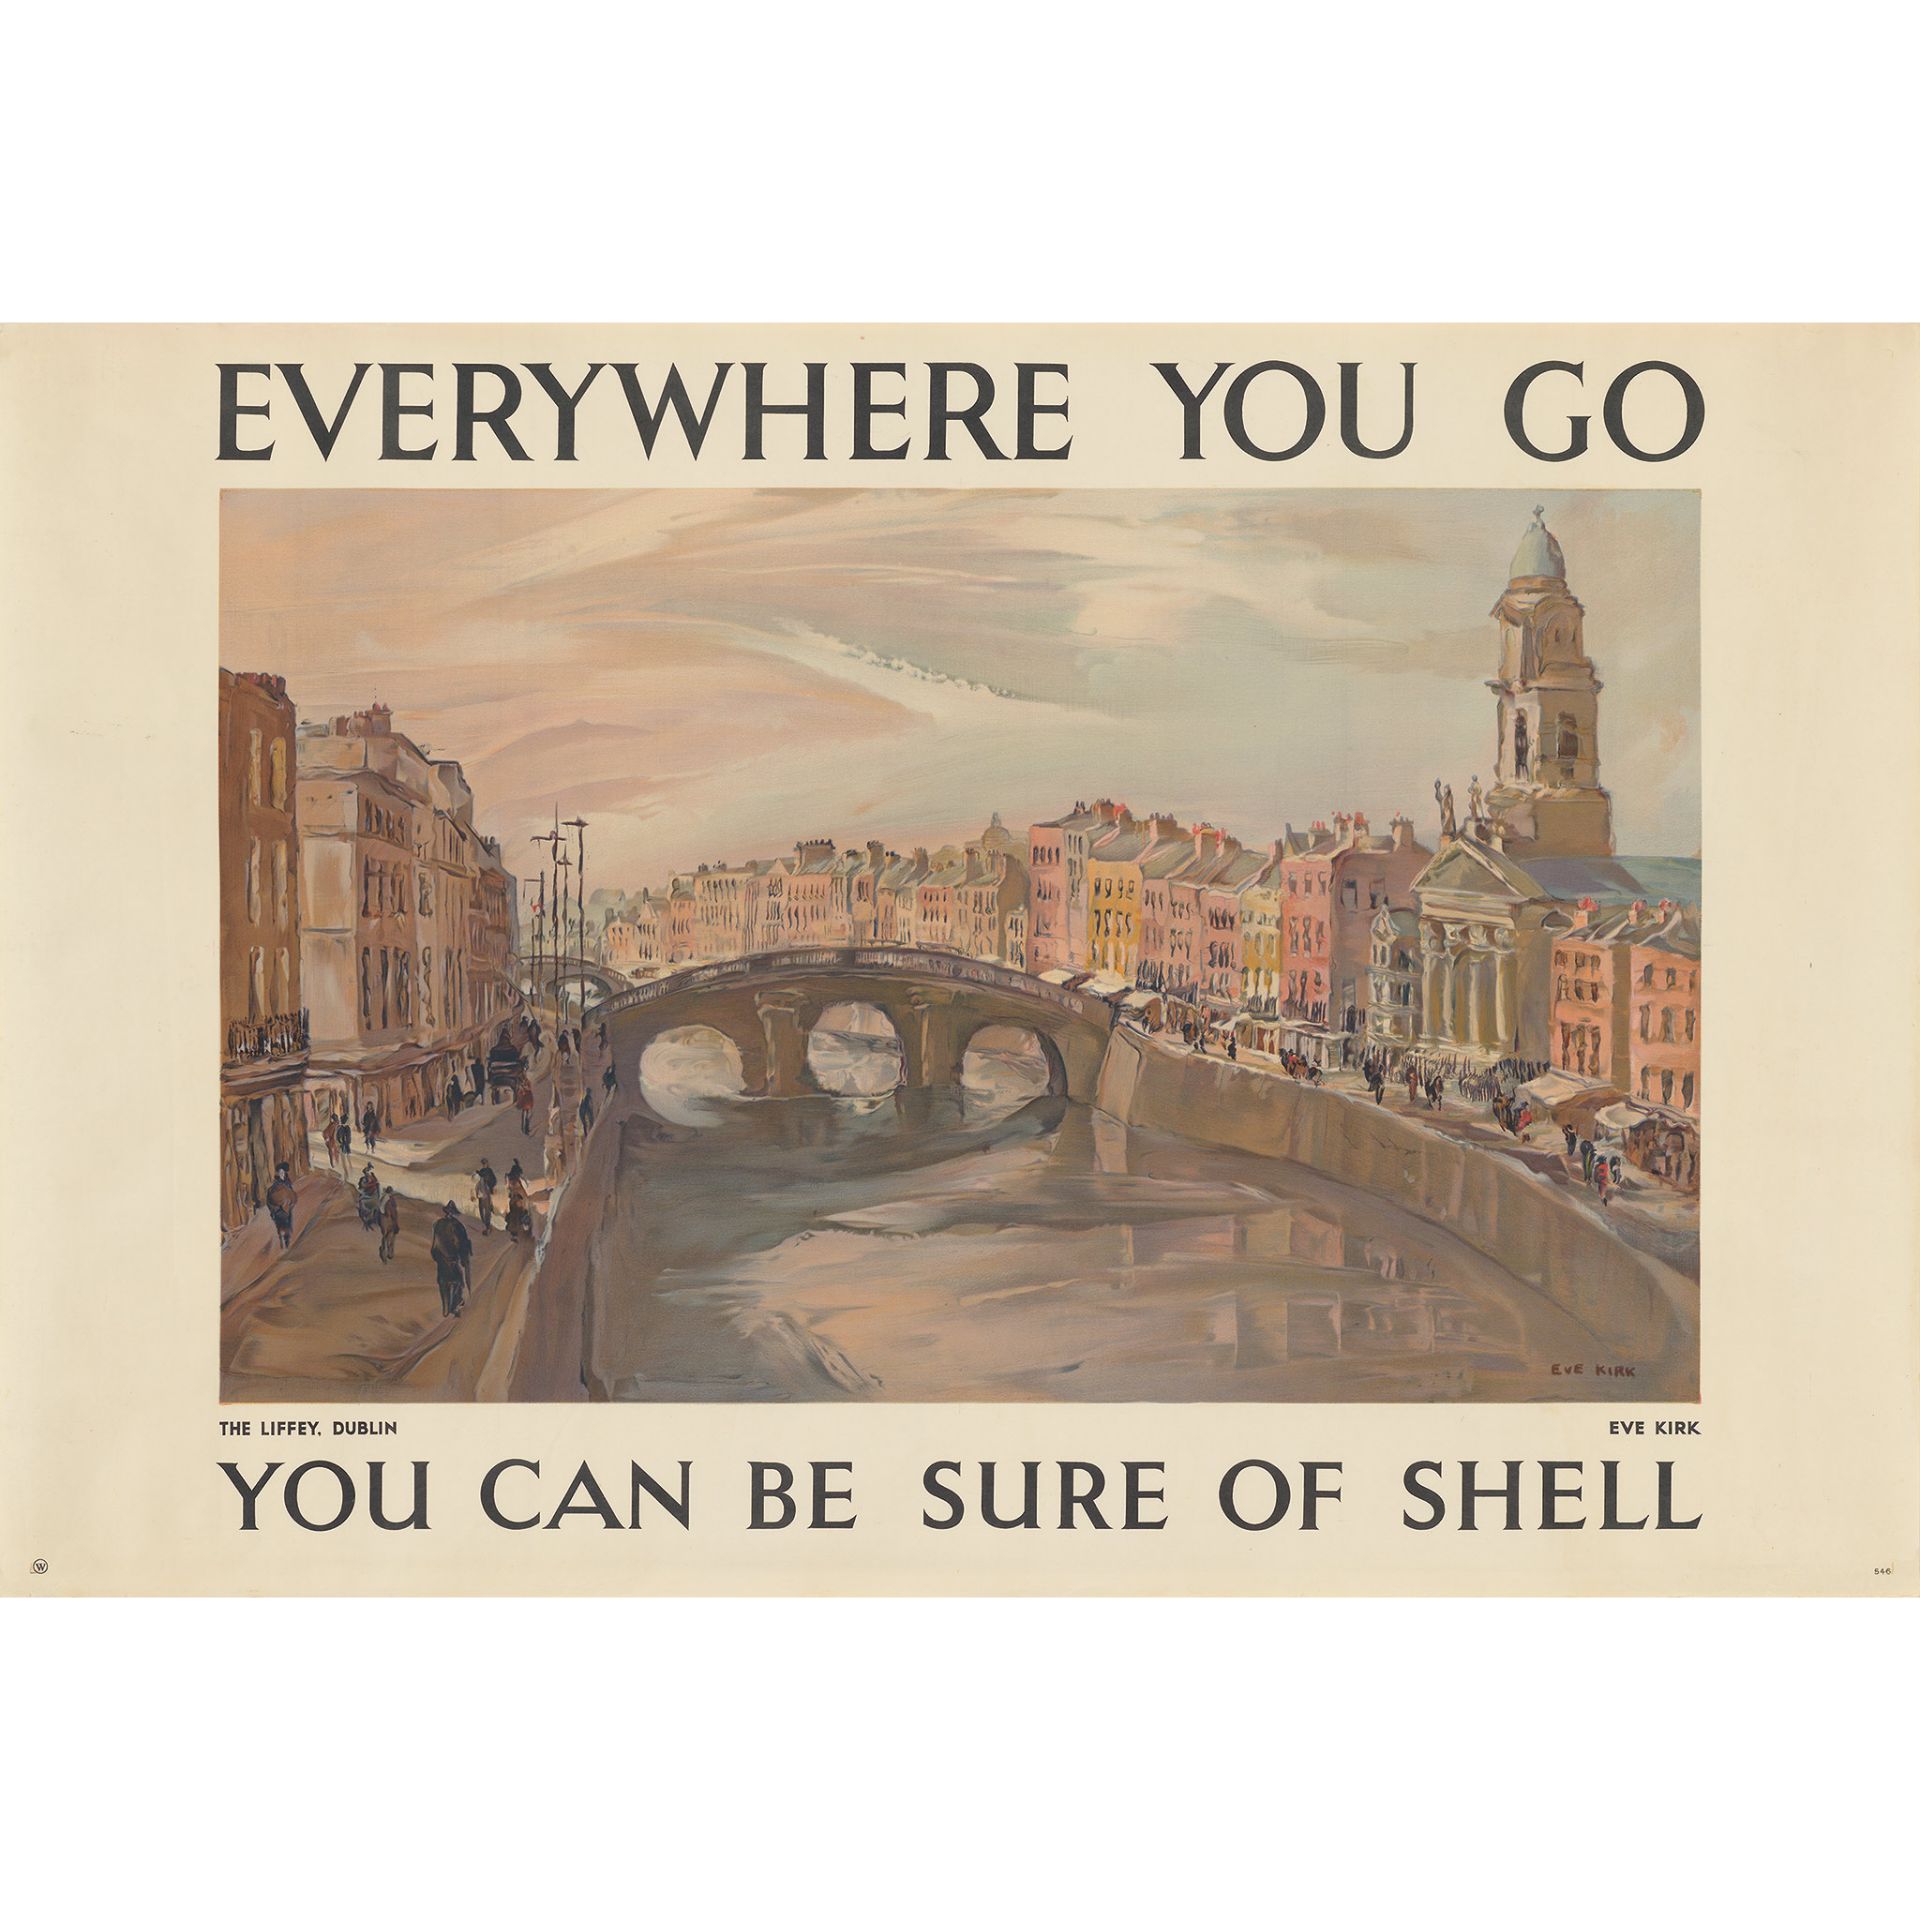 Eve Kirk (1900–1969) The Liffey, Dublin